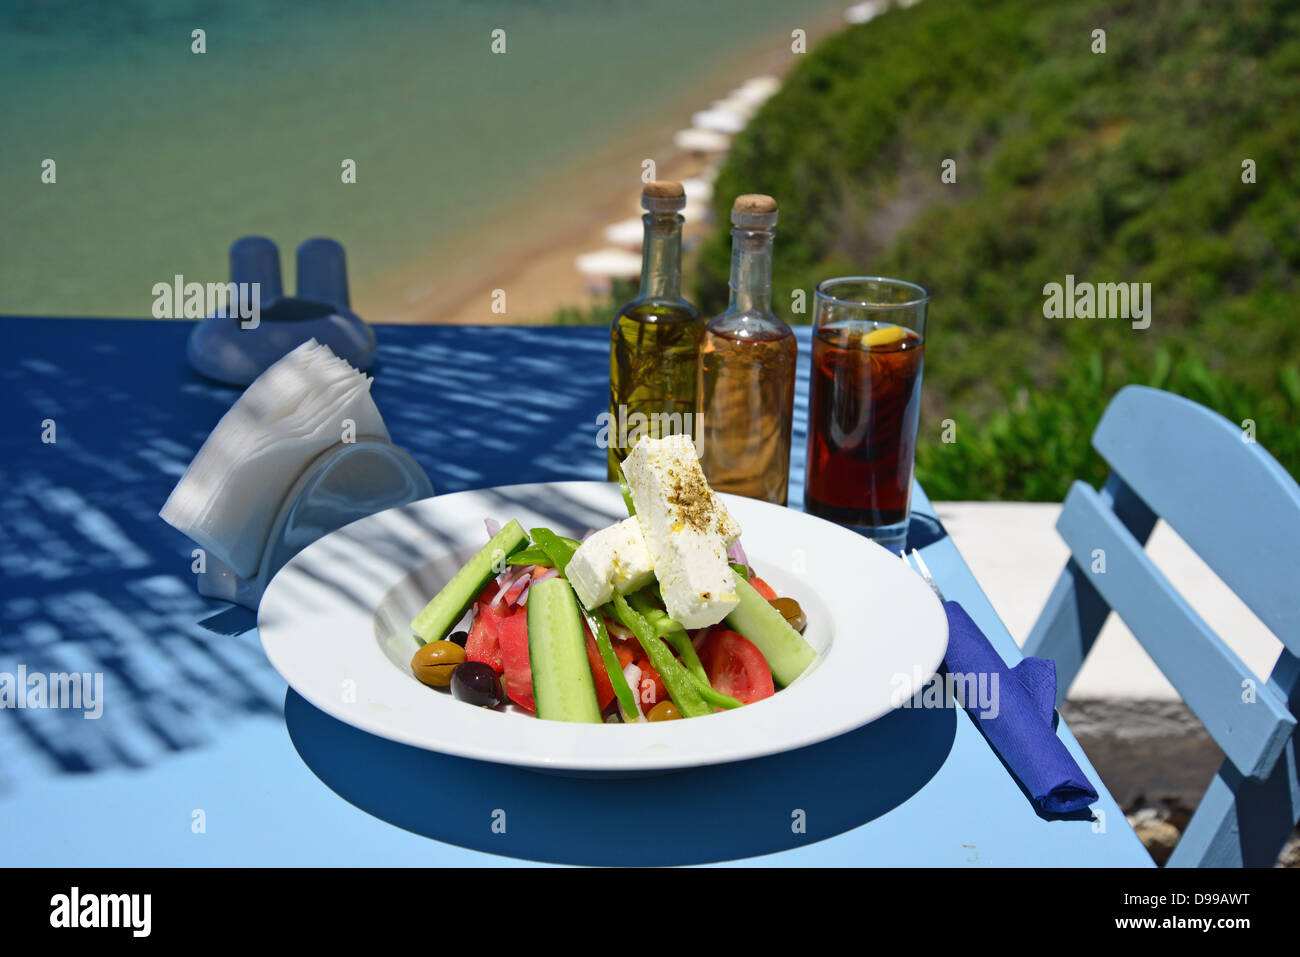 Insalata greca sulla tabella "Philosphia' taverna sulla spiaggia, Pefkos, Rodi (Rodi), del Dodecaneso, Egeo Meridionale Regione, Grecia Foto Stock